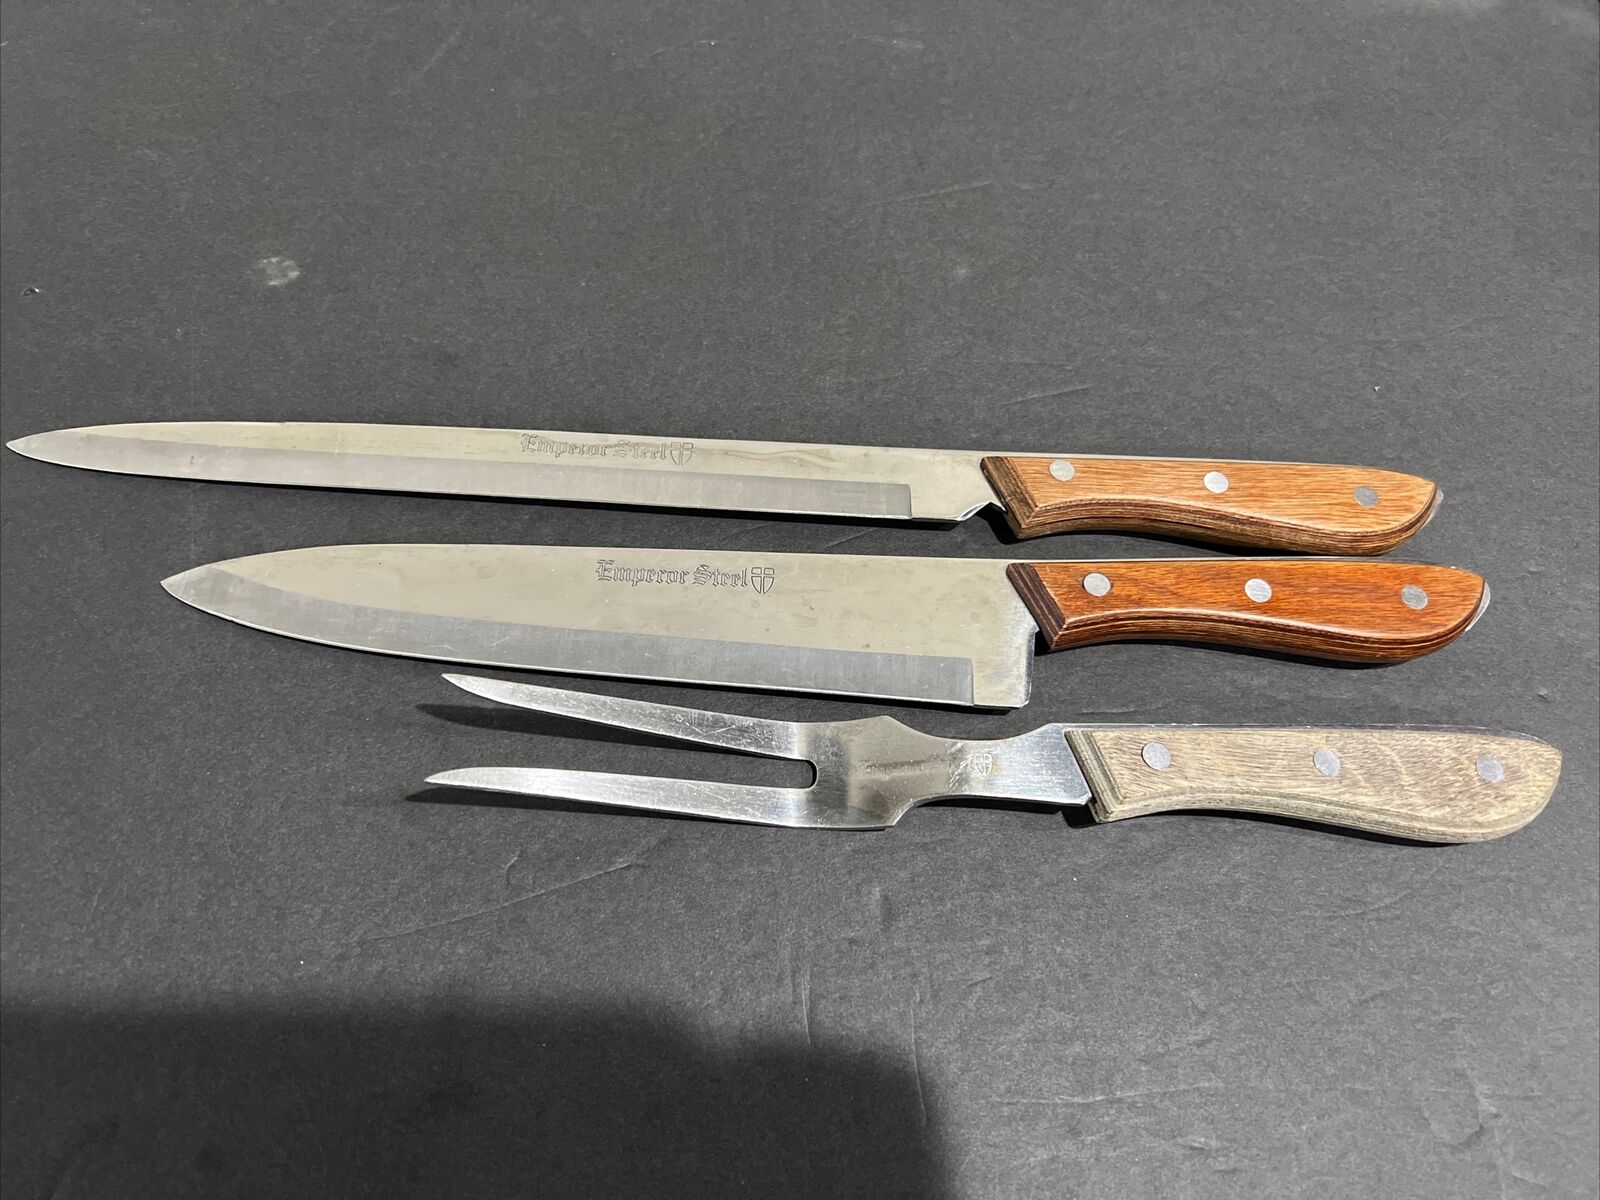 Vintage EMPEROR STEEL Set Chef Carving Knife Fork Made Japan Houshold set of 3